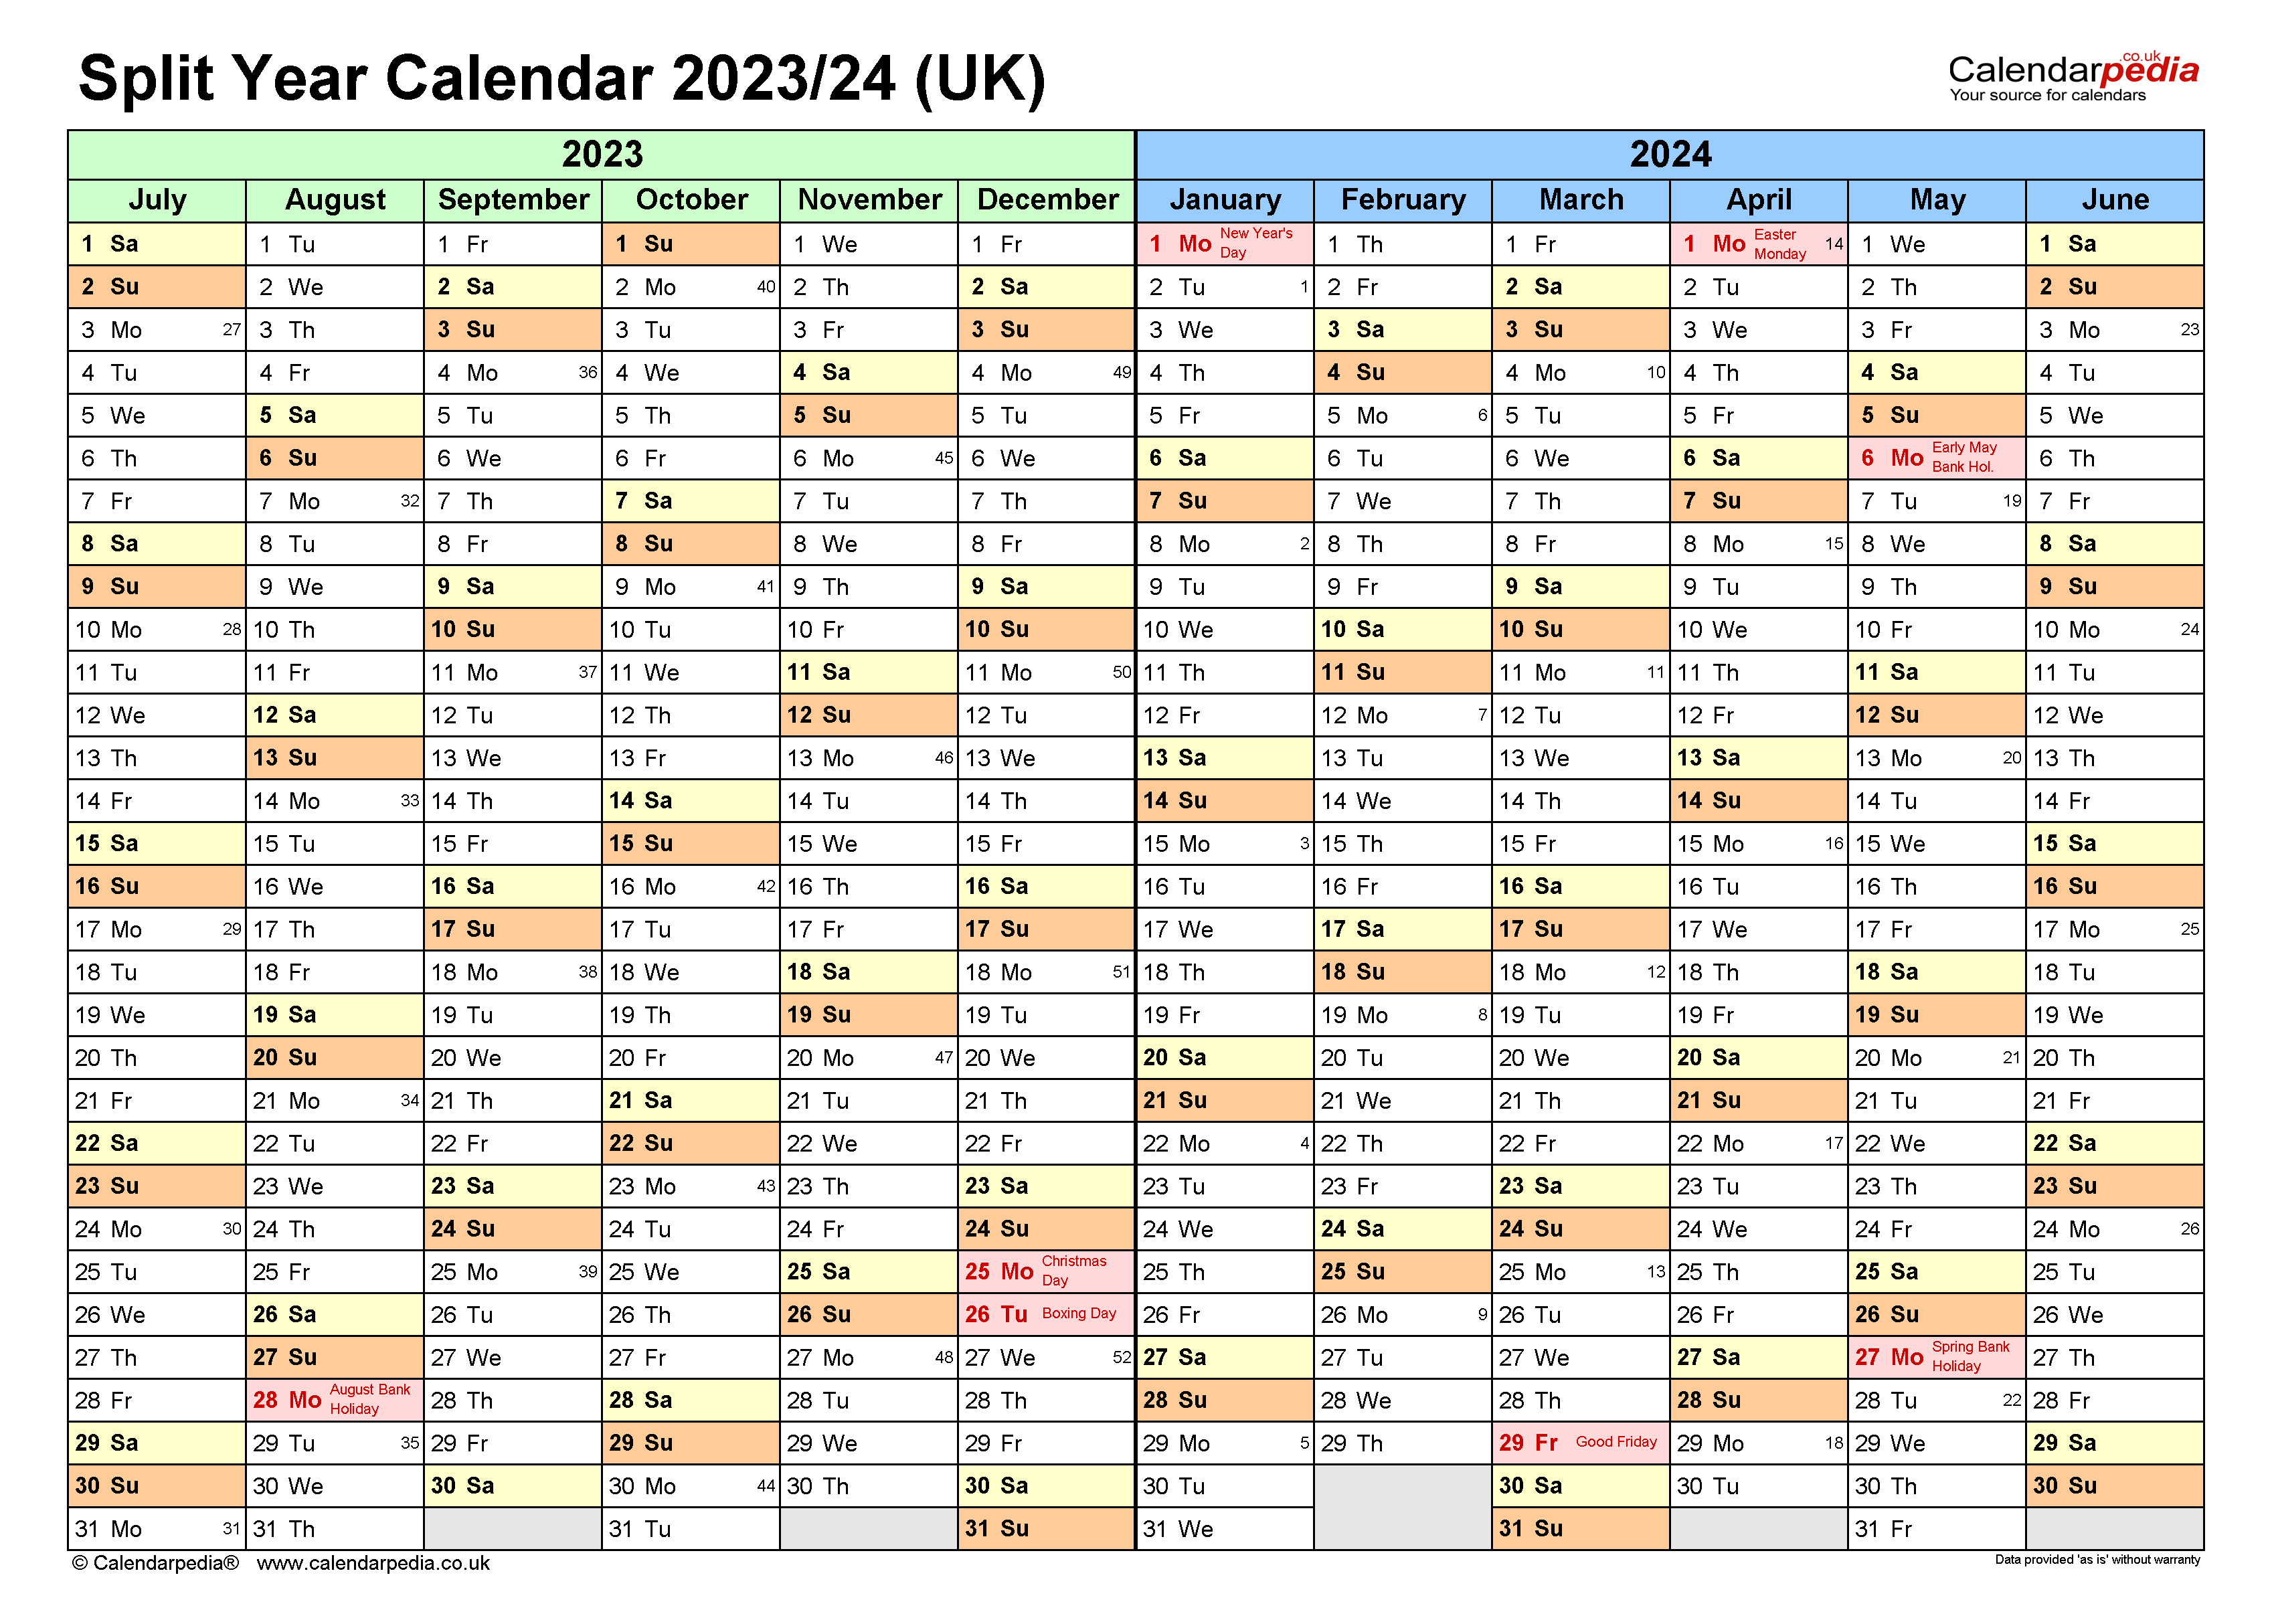 Split Year Calendars 2023/24 Uk (July To June) For Pdf intended for Calendar September 2023 To June 2024